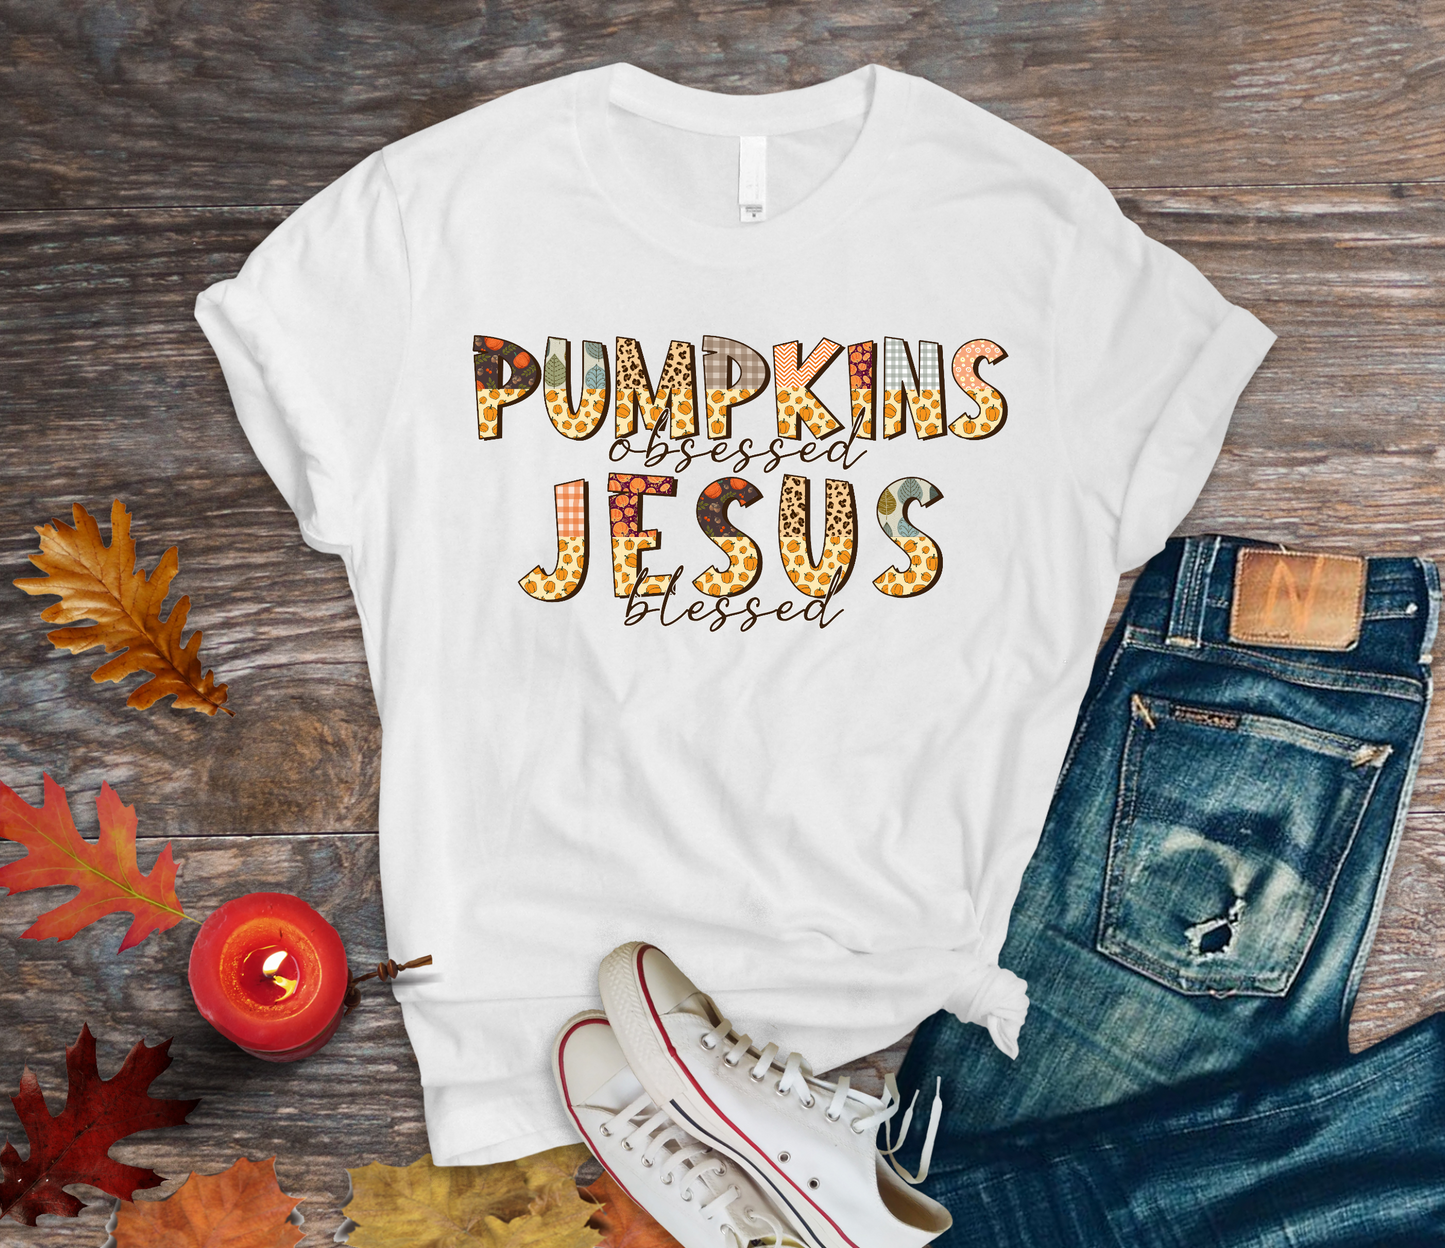 Pumpkin obsessed Jesus Blessed DTF Transfer Film 9100